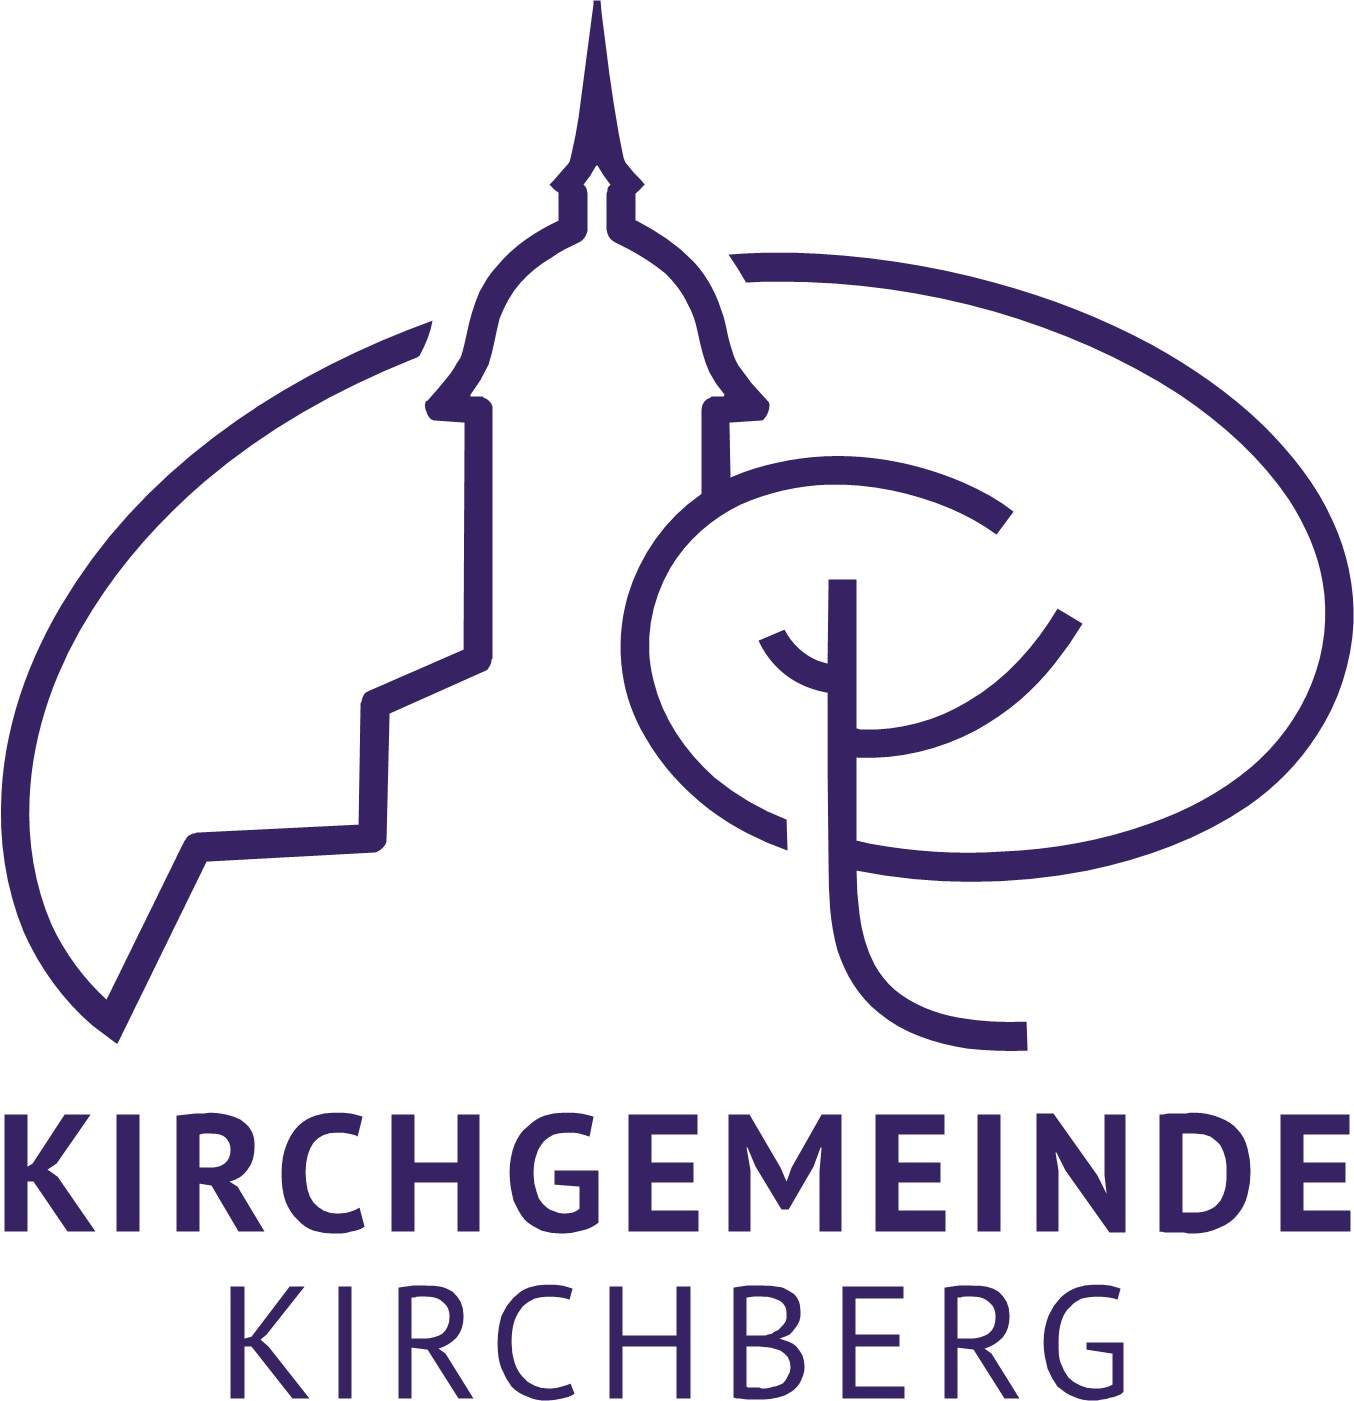 Kirchgemeinde Kirchberg